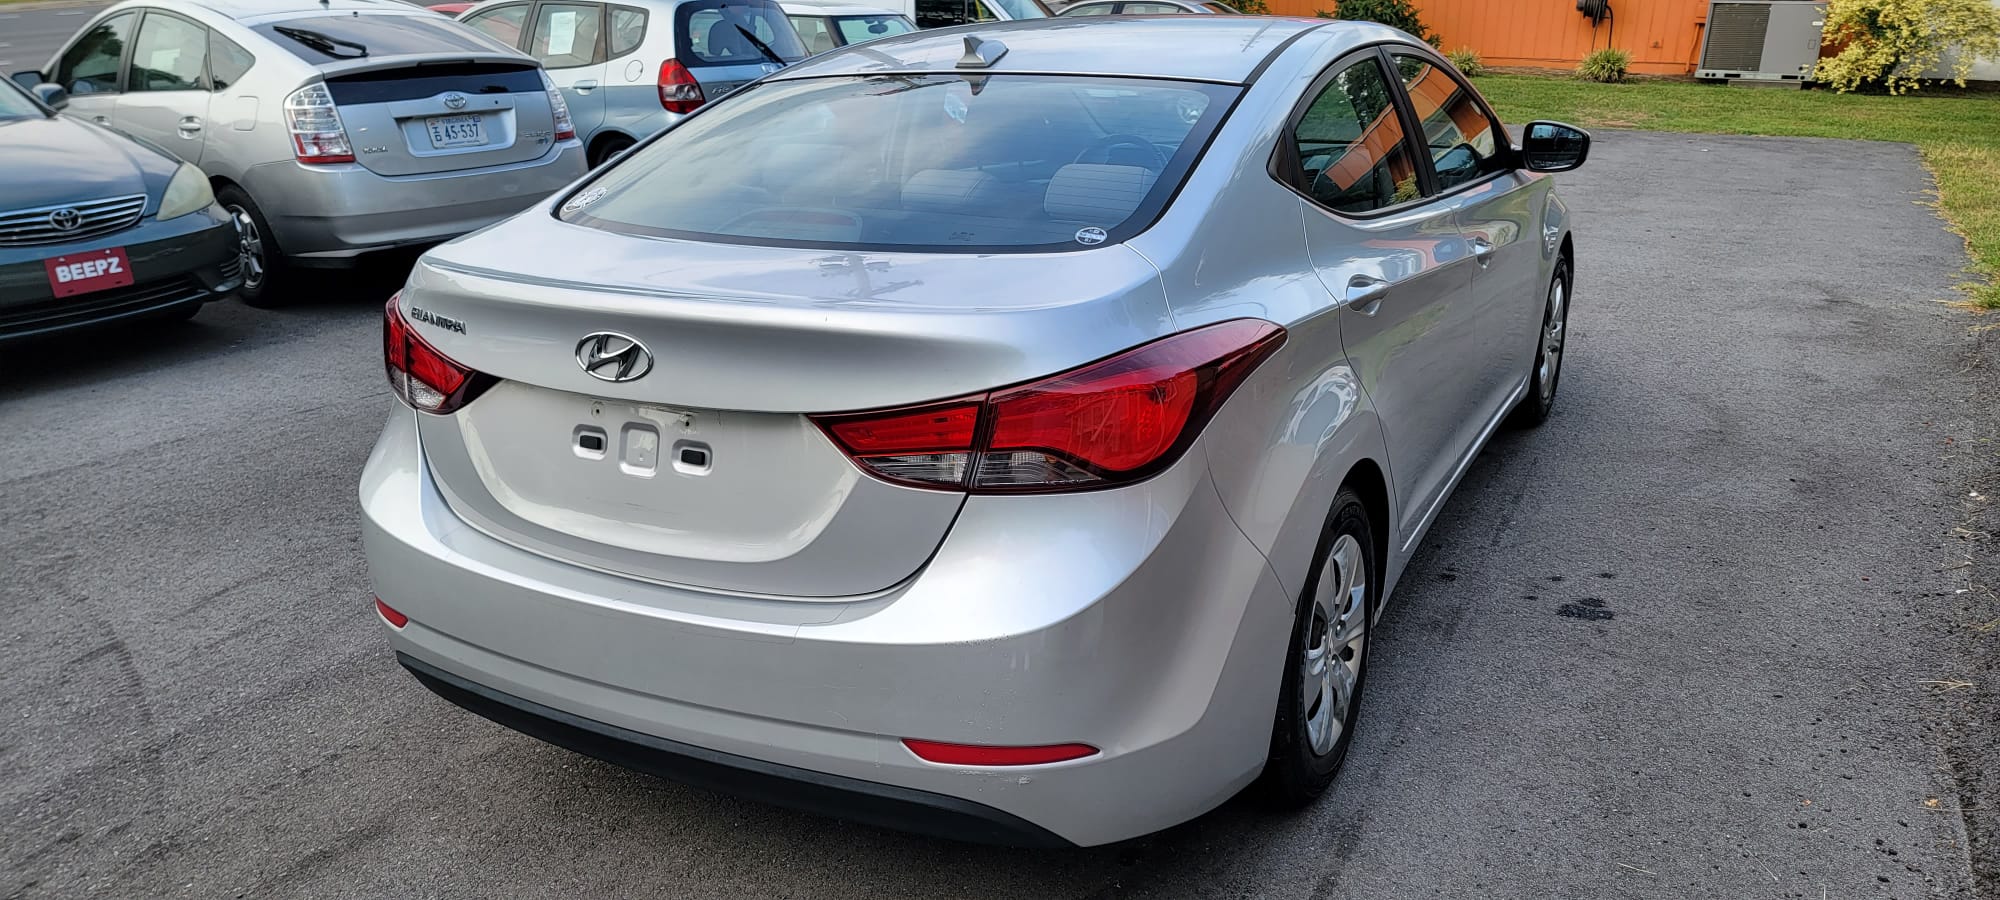 2016 Hyundai Elantra full